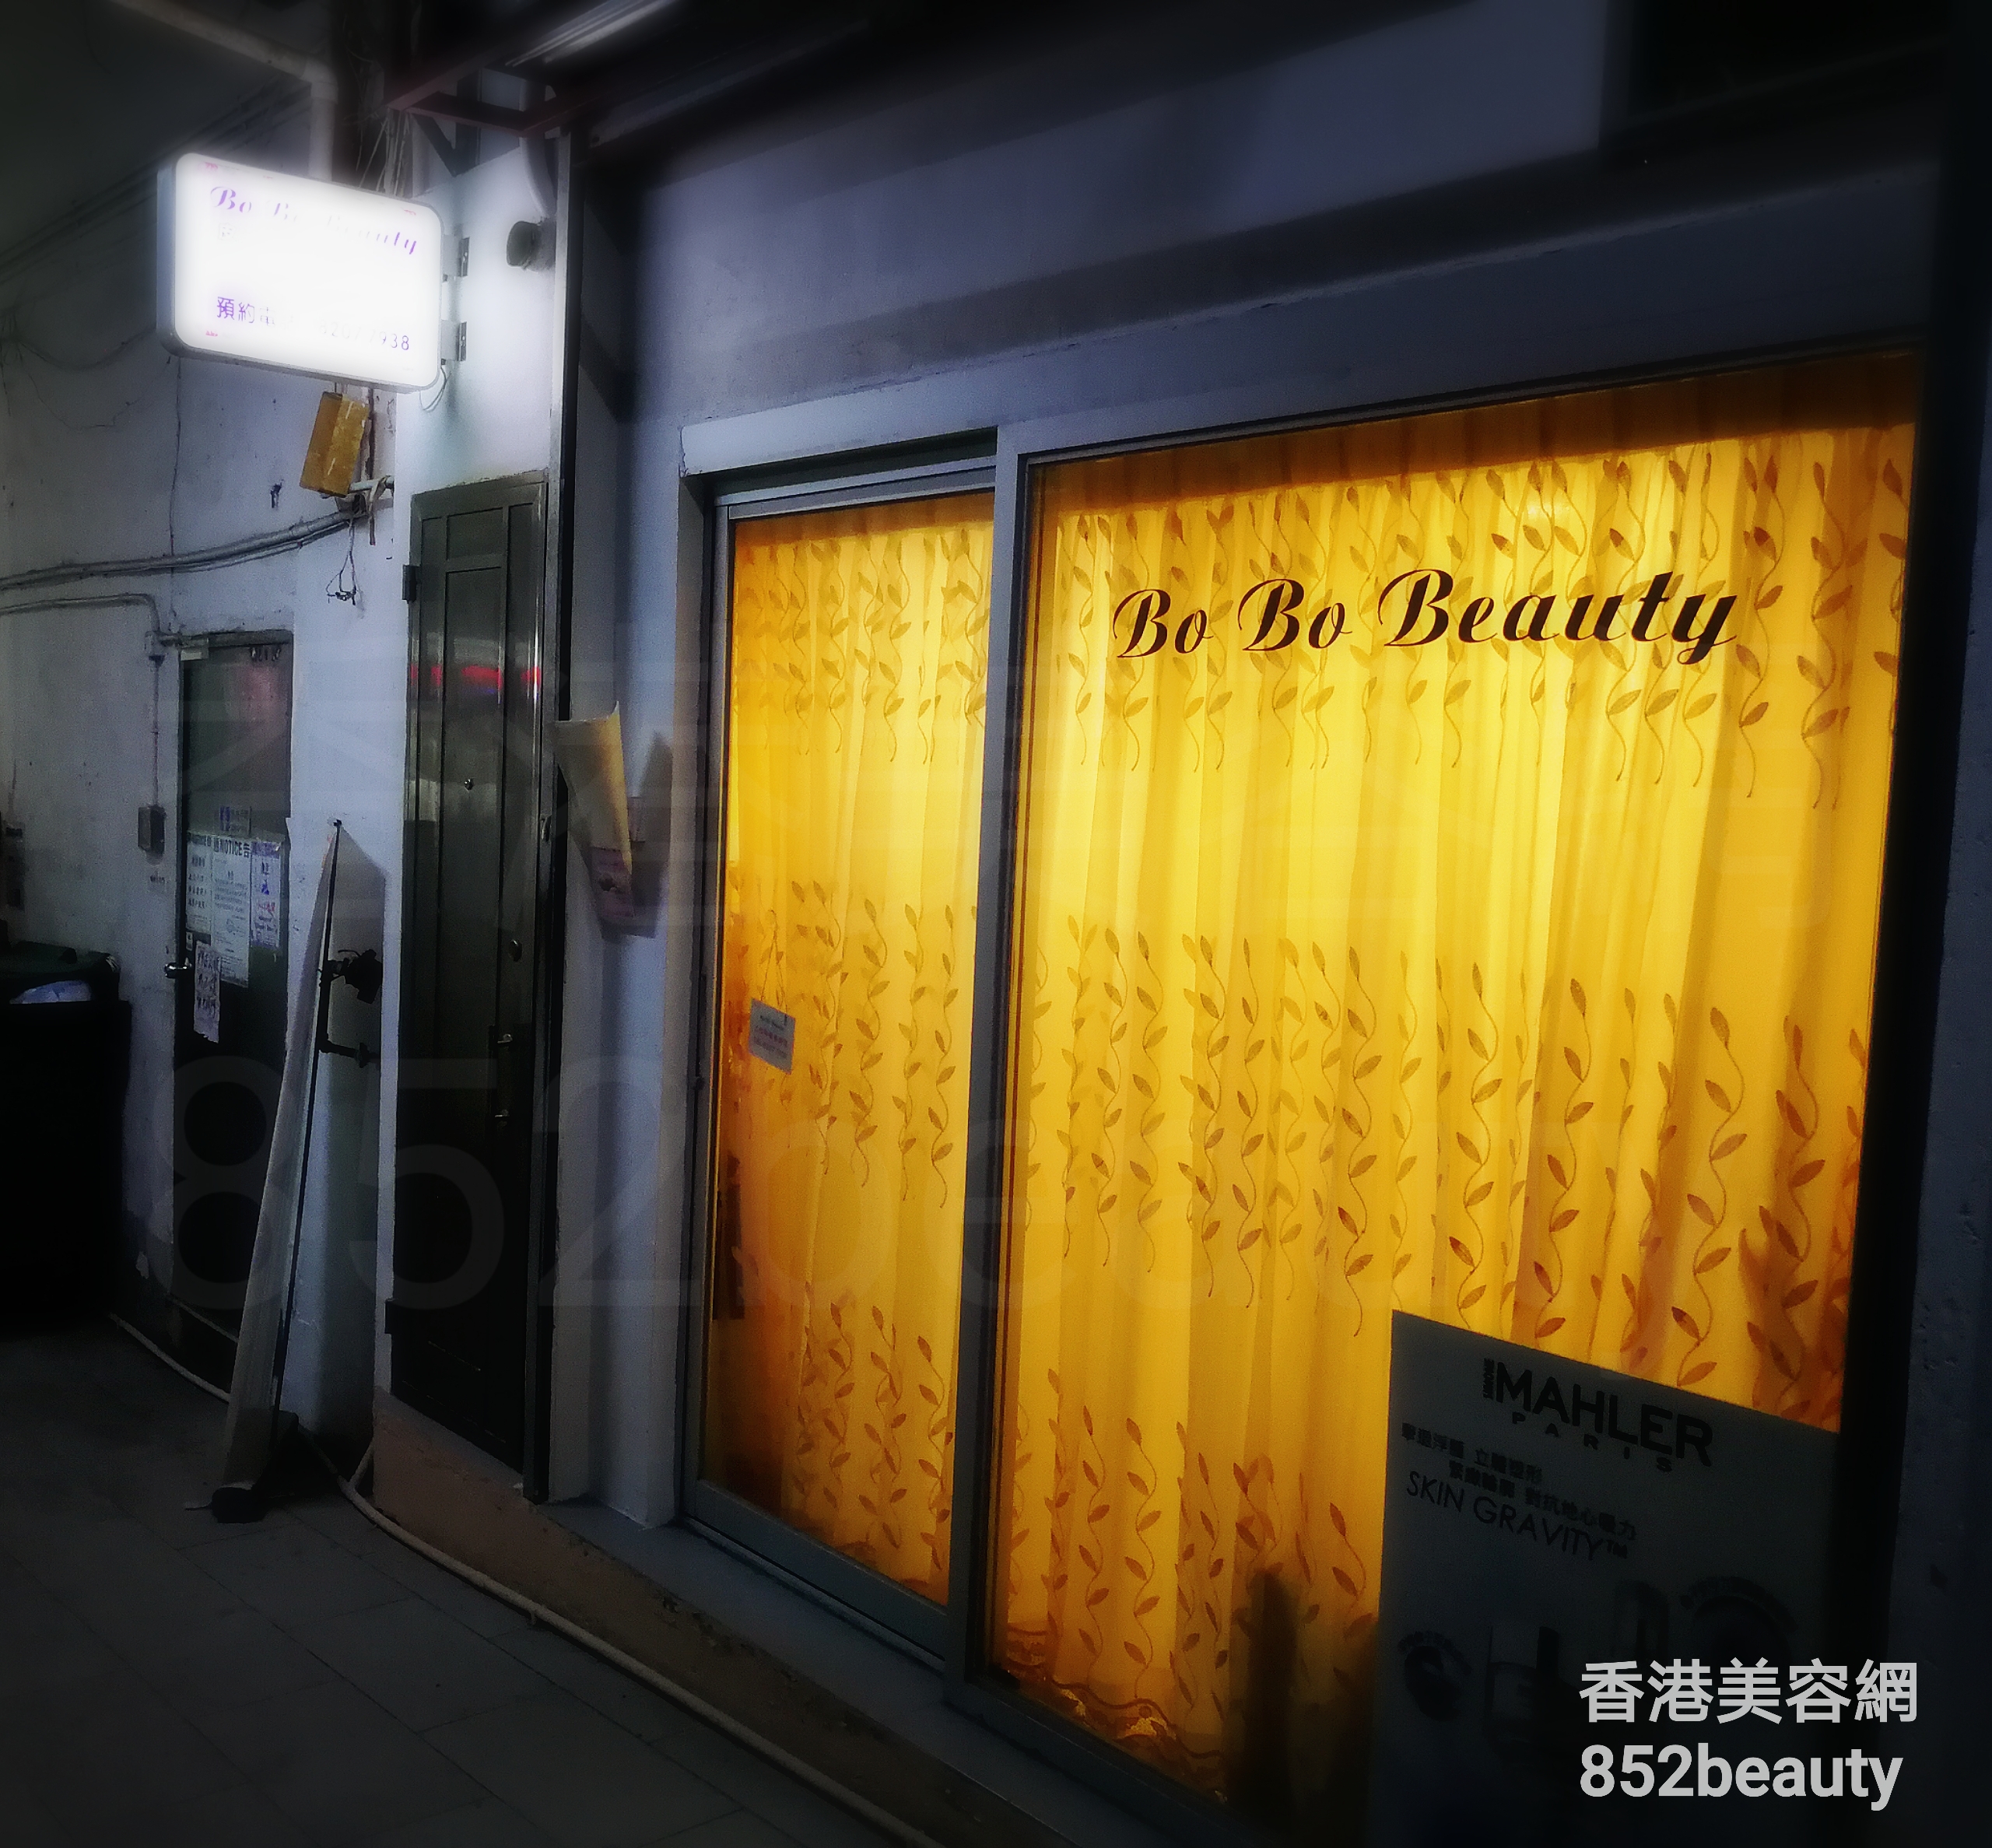 脱毛: Bo Bo Beauty